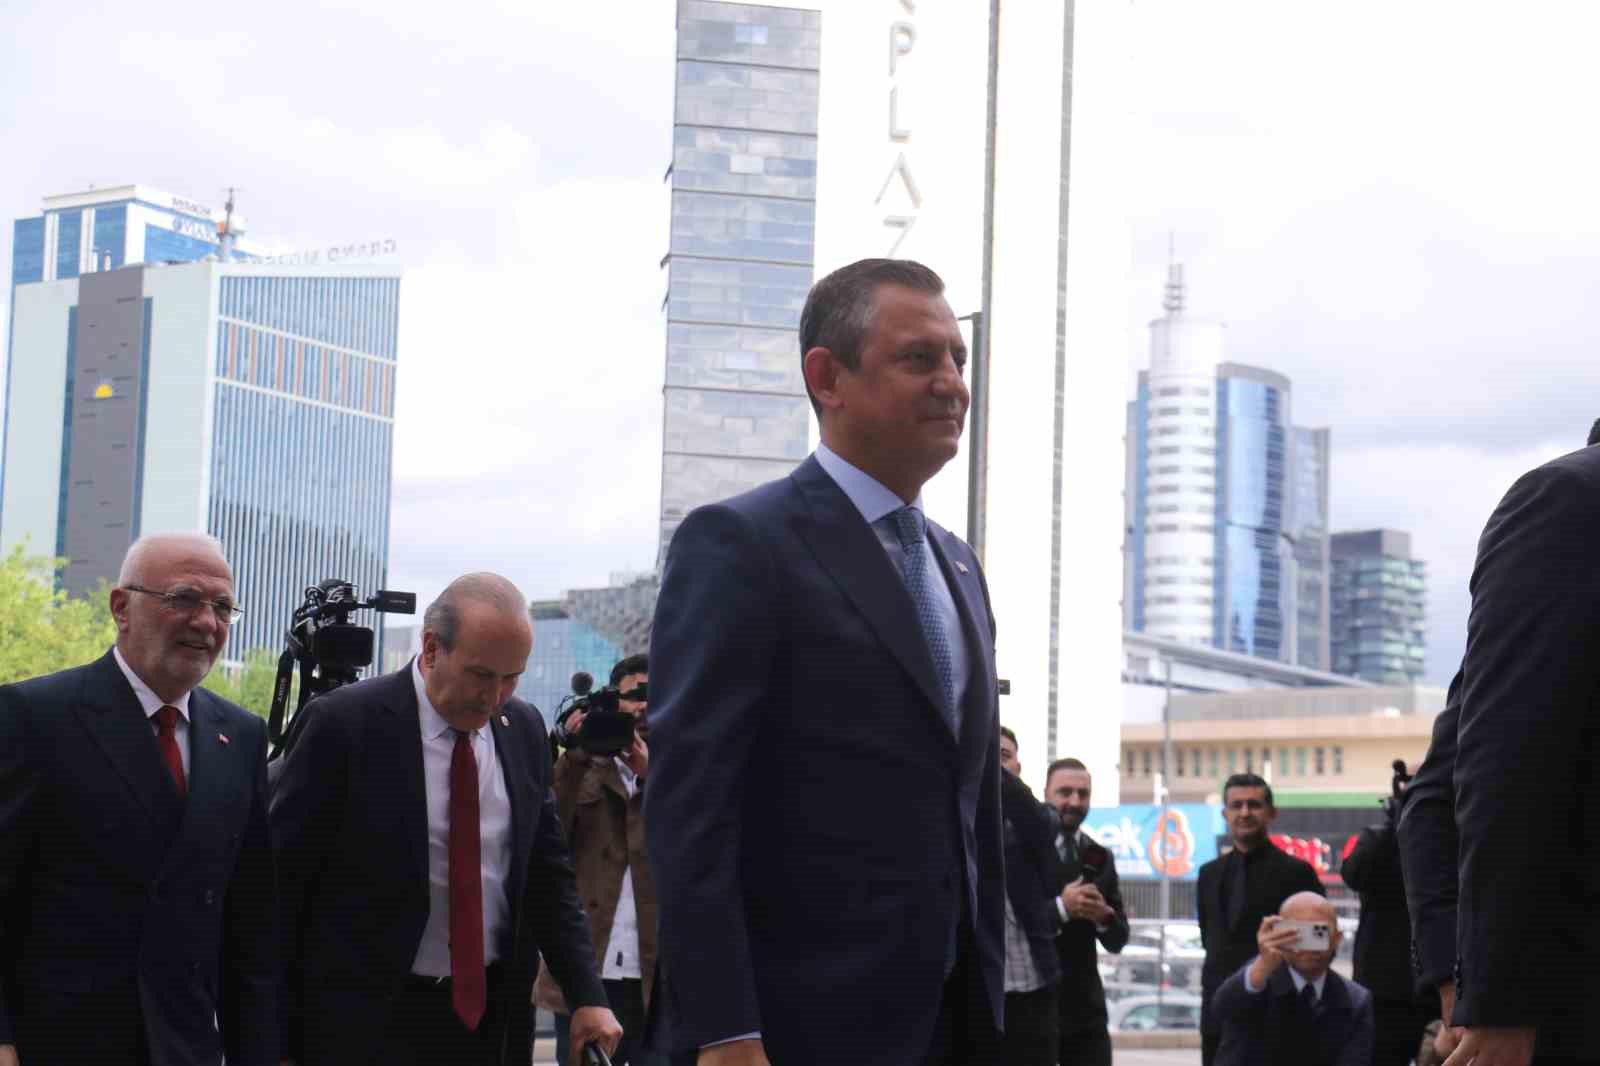 Cumhuriyet Halk Partisi Genel Başkanı Özgür Özel, Cumhurbaşkanı Recep Tayyip Erdoğan ile görüşmek üzere AK Parti Genel Merkezine geldi.
